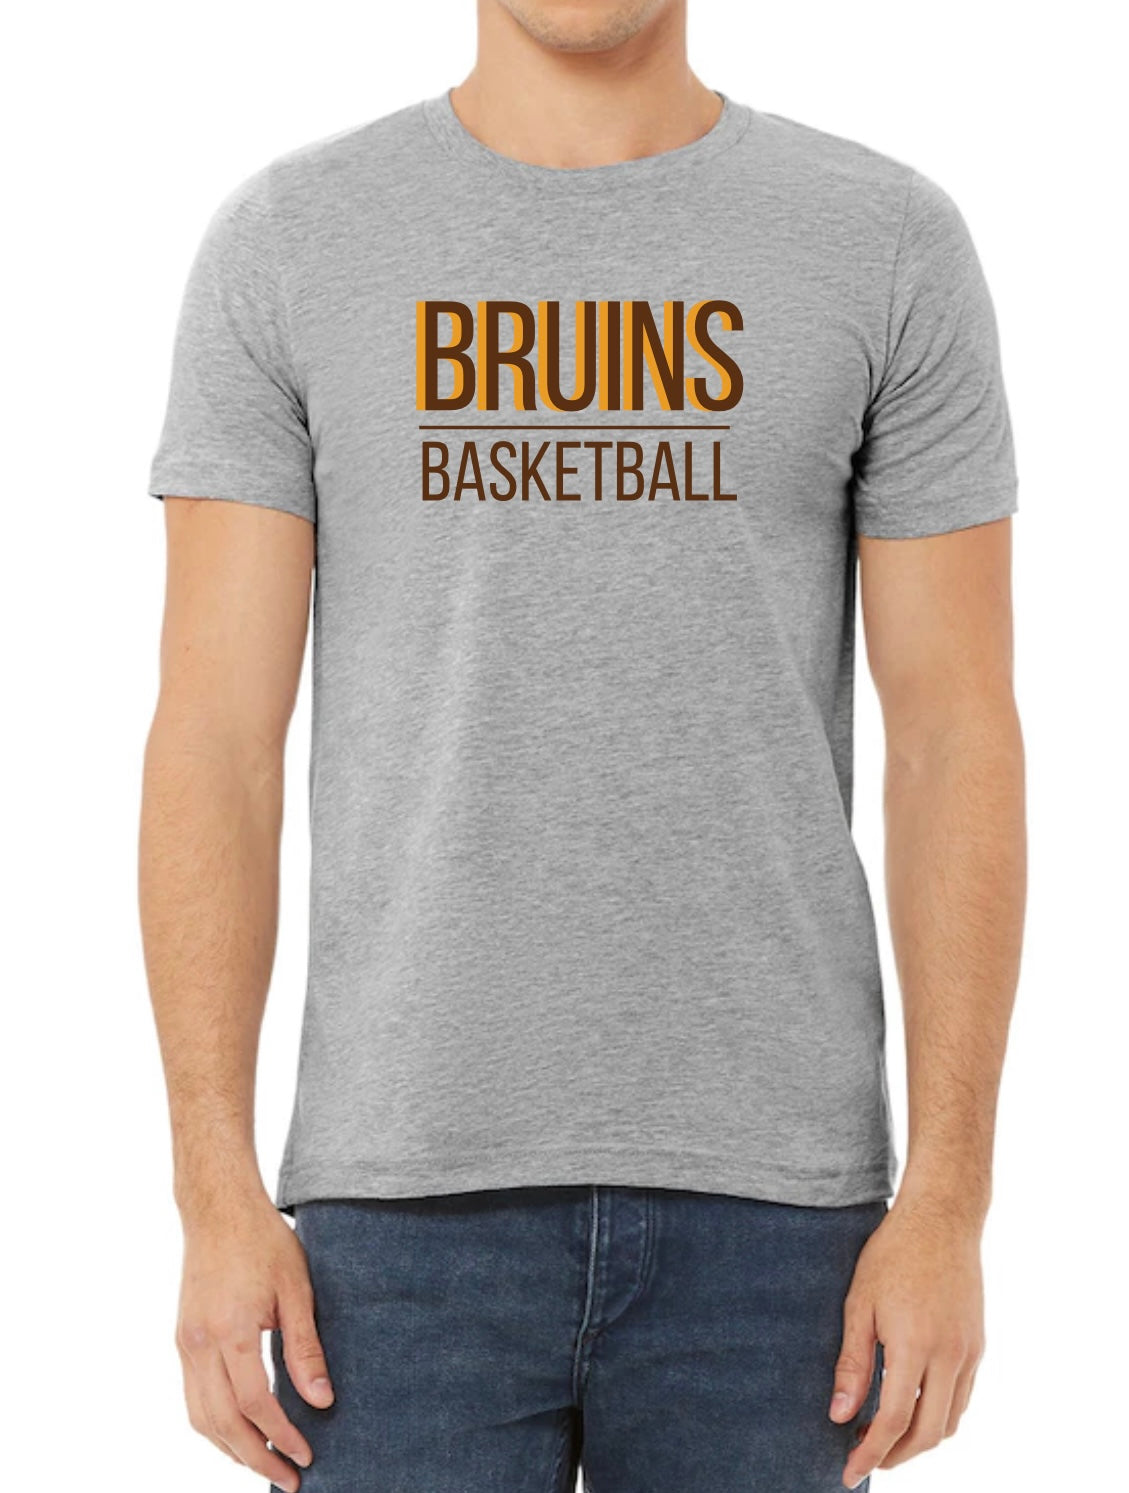 Bruins Basketball Tee